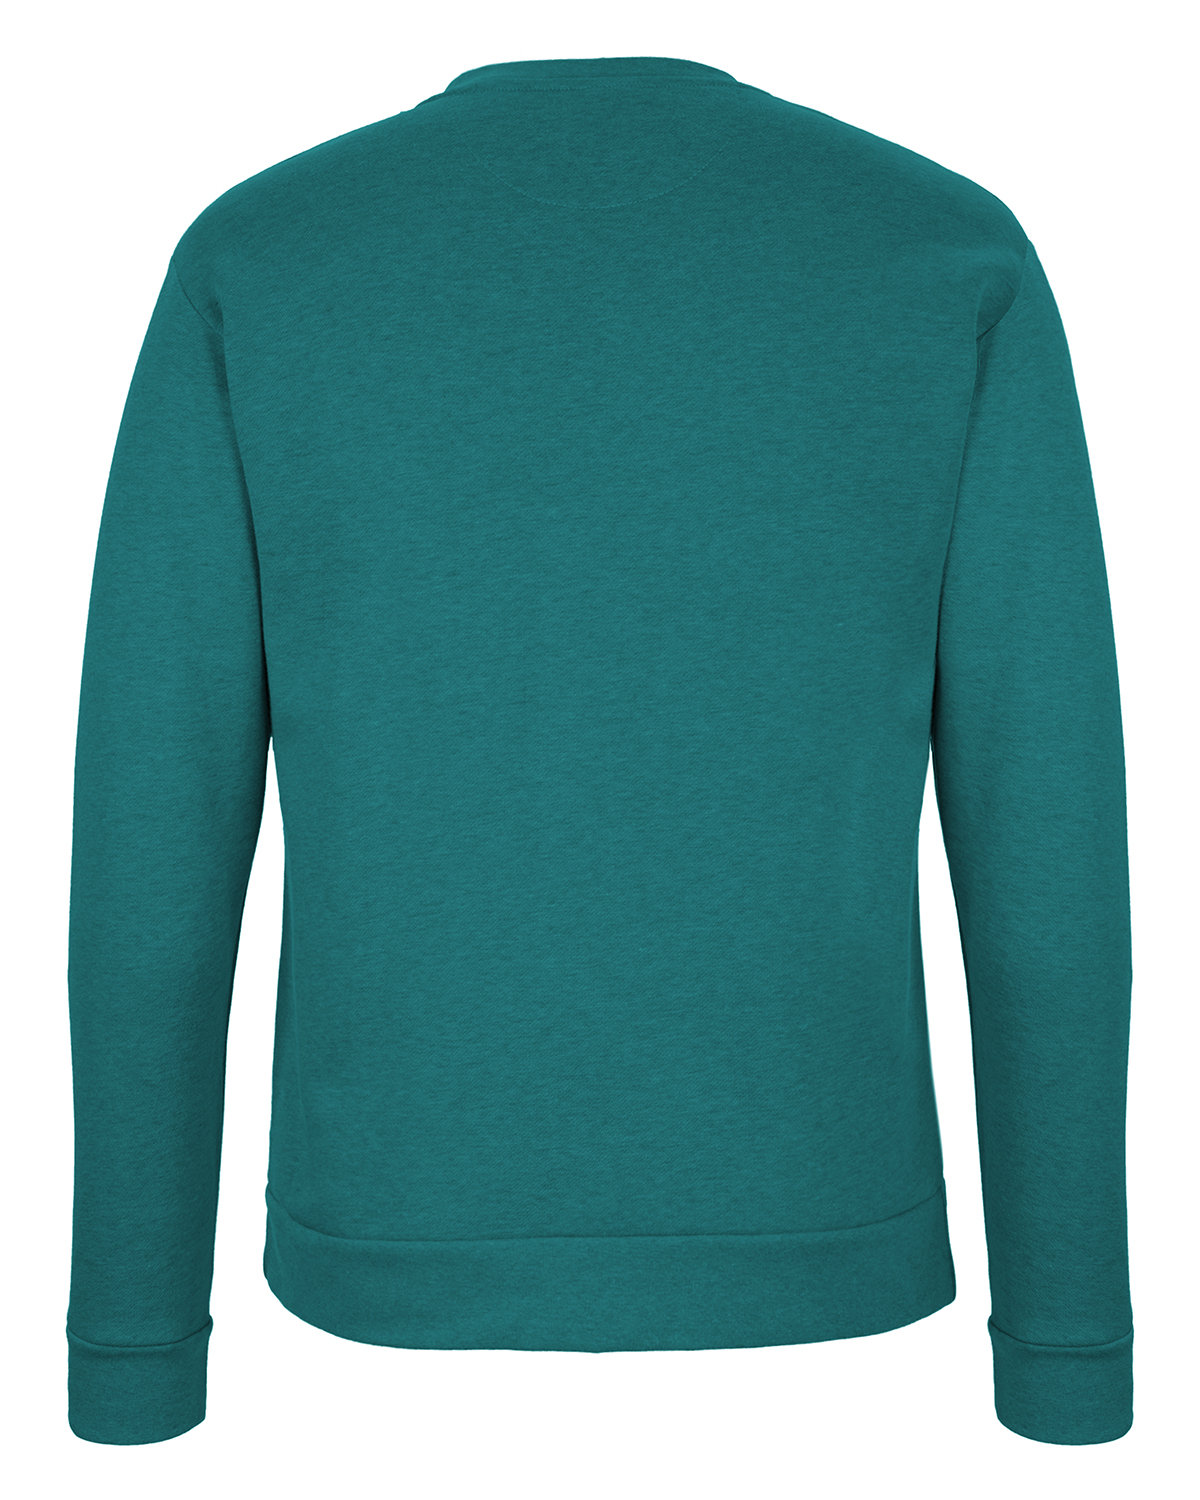 Next Level Apparel Unisex Pullover PCH Crewneck Sweatshirt | alphabroder